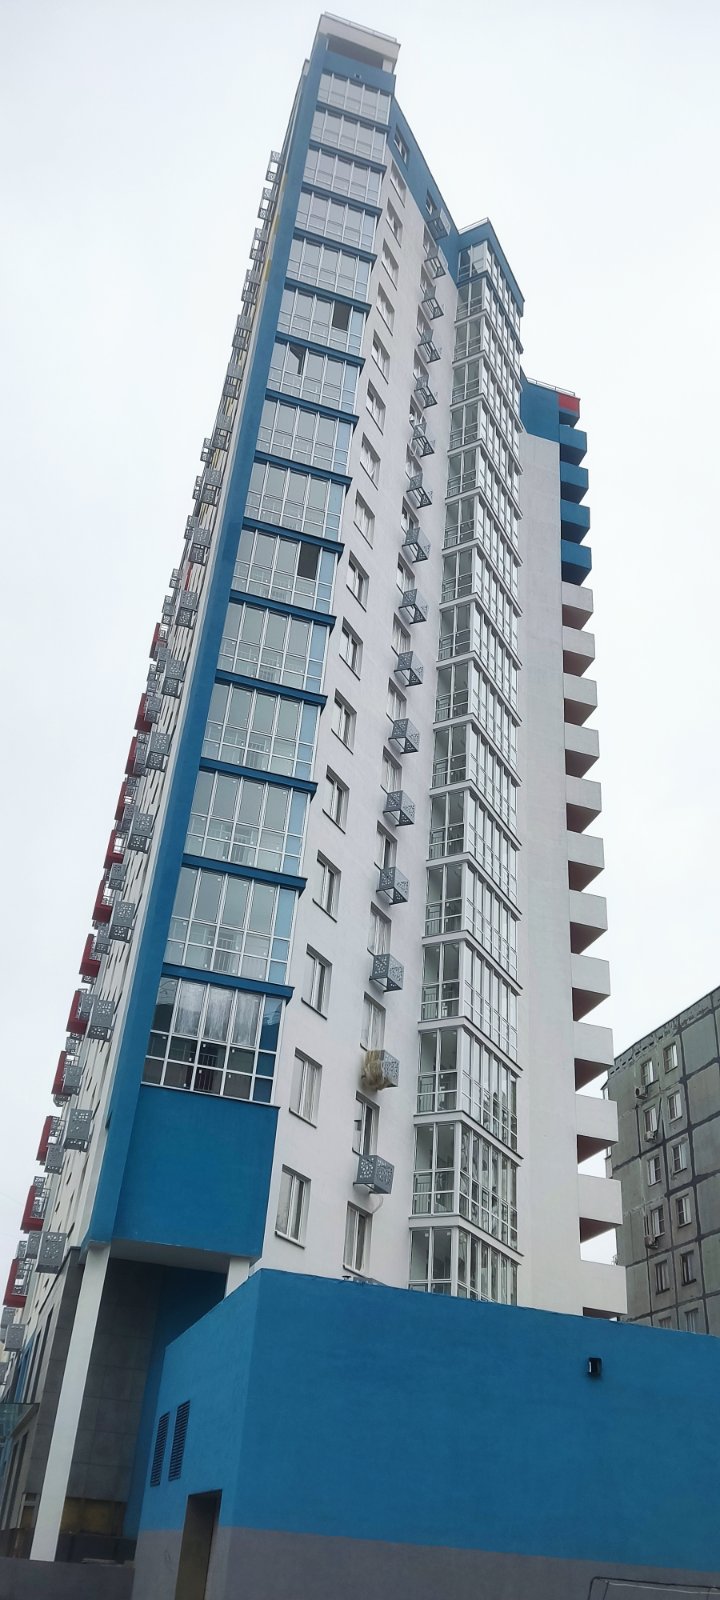 Льготная ипотека до 8% доступна нижегородцам на квартиры в готовой новостройке  - фото 1